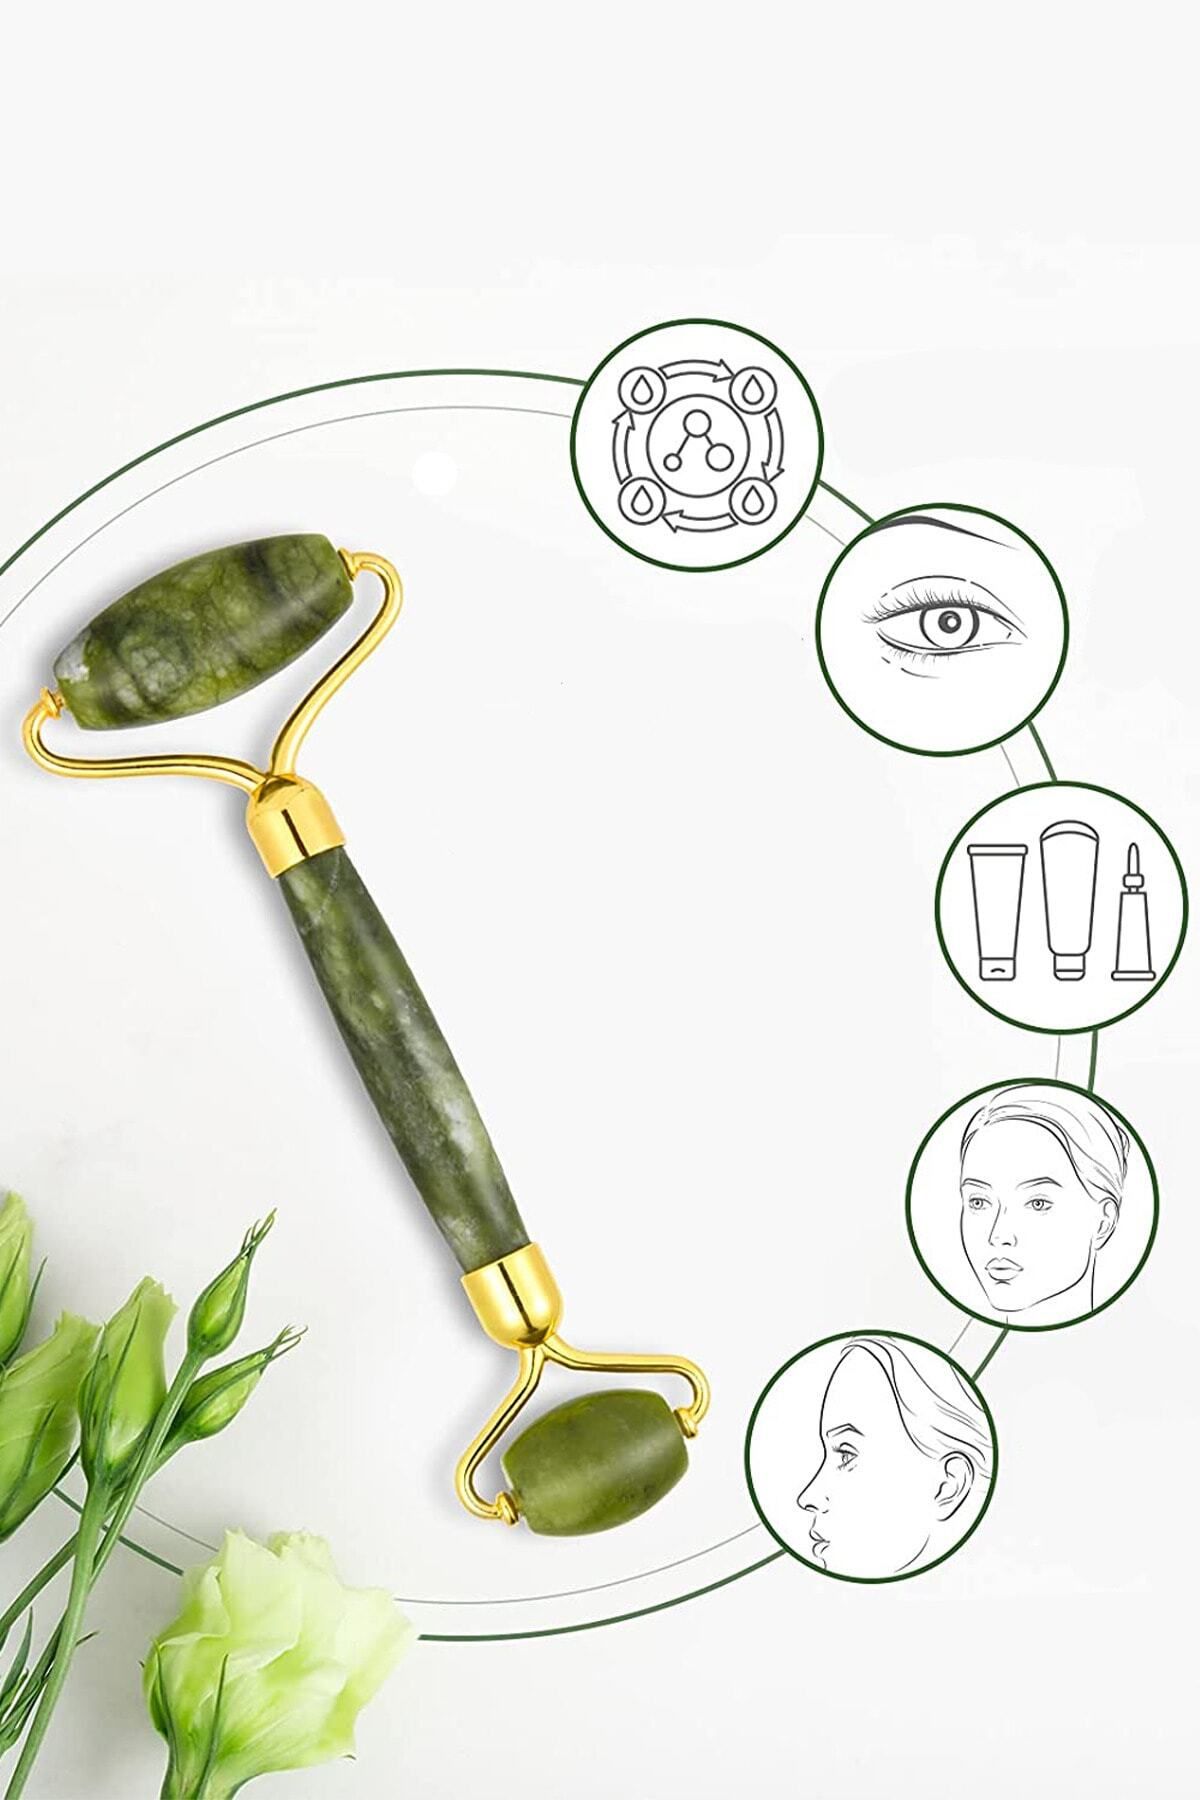 Benefse Yeşim Taşı Jade Roller Cilt Masaj Taşı %100 Doğal Göz Masaj Aleti Plazma Pen Face Roller